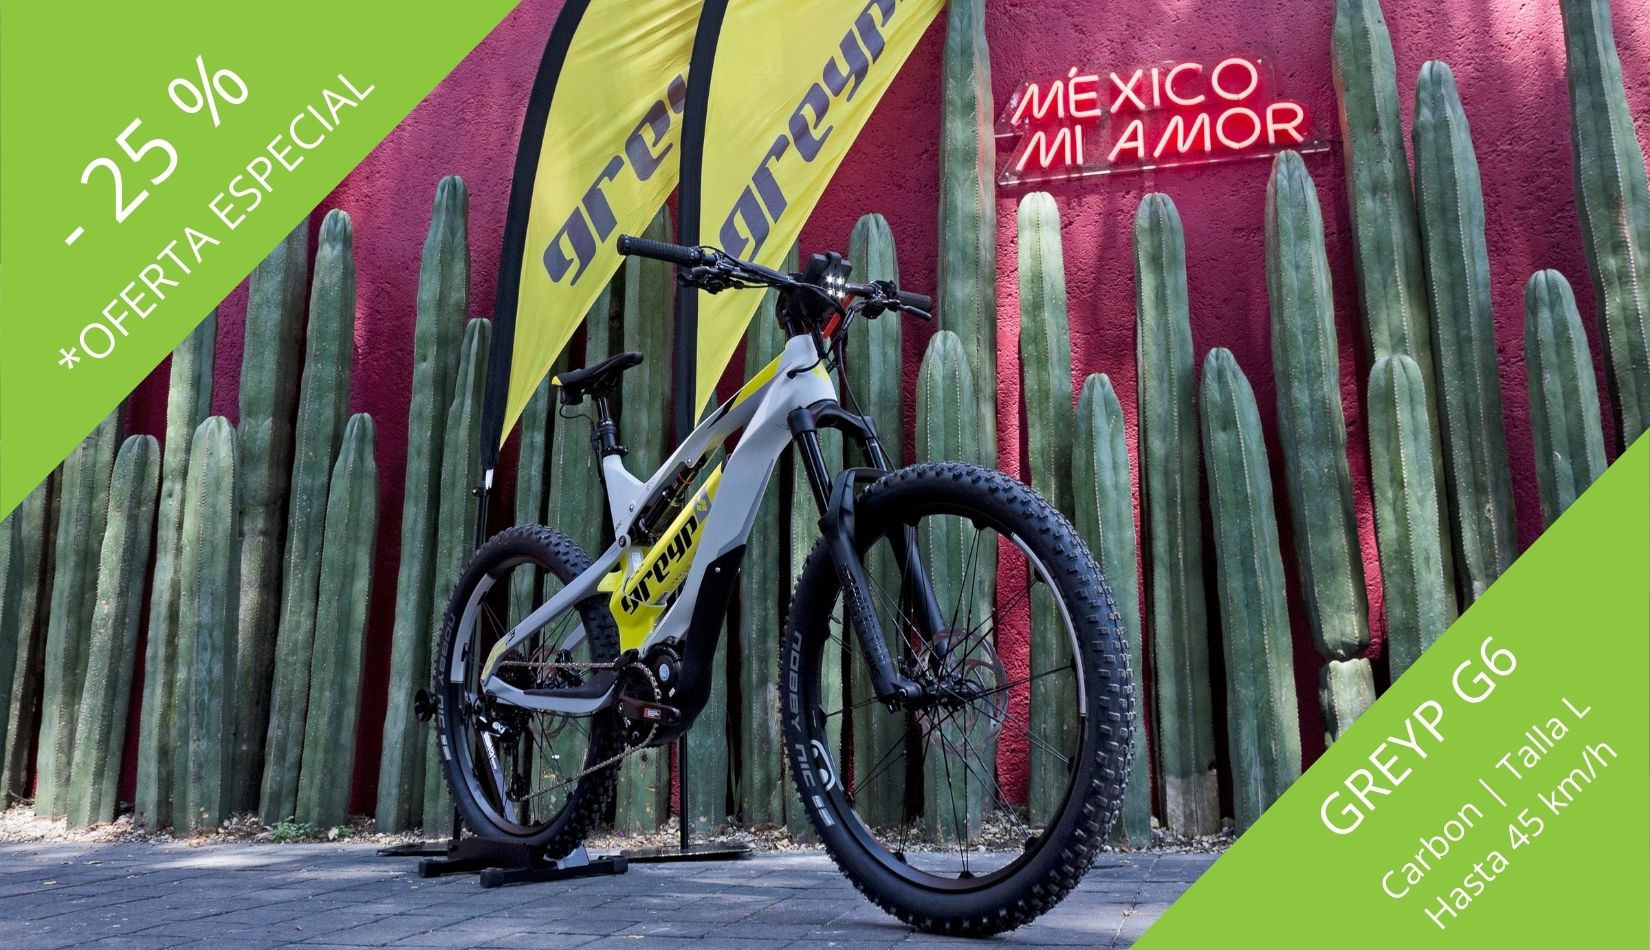 Oferta Descuento Promo bici Electrica GREYP G6 carbon talla L Mexico